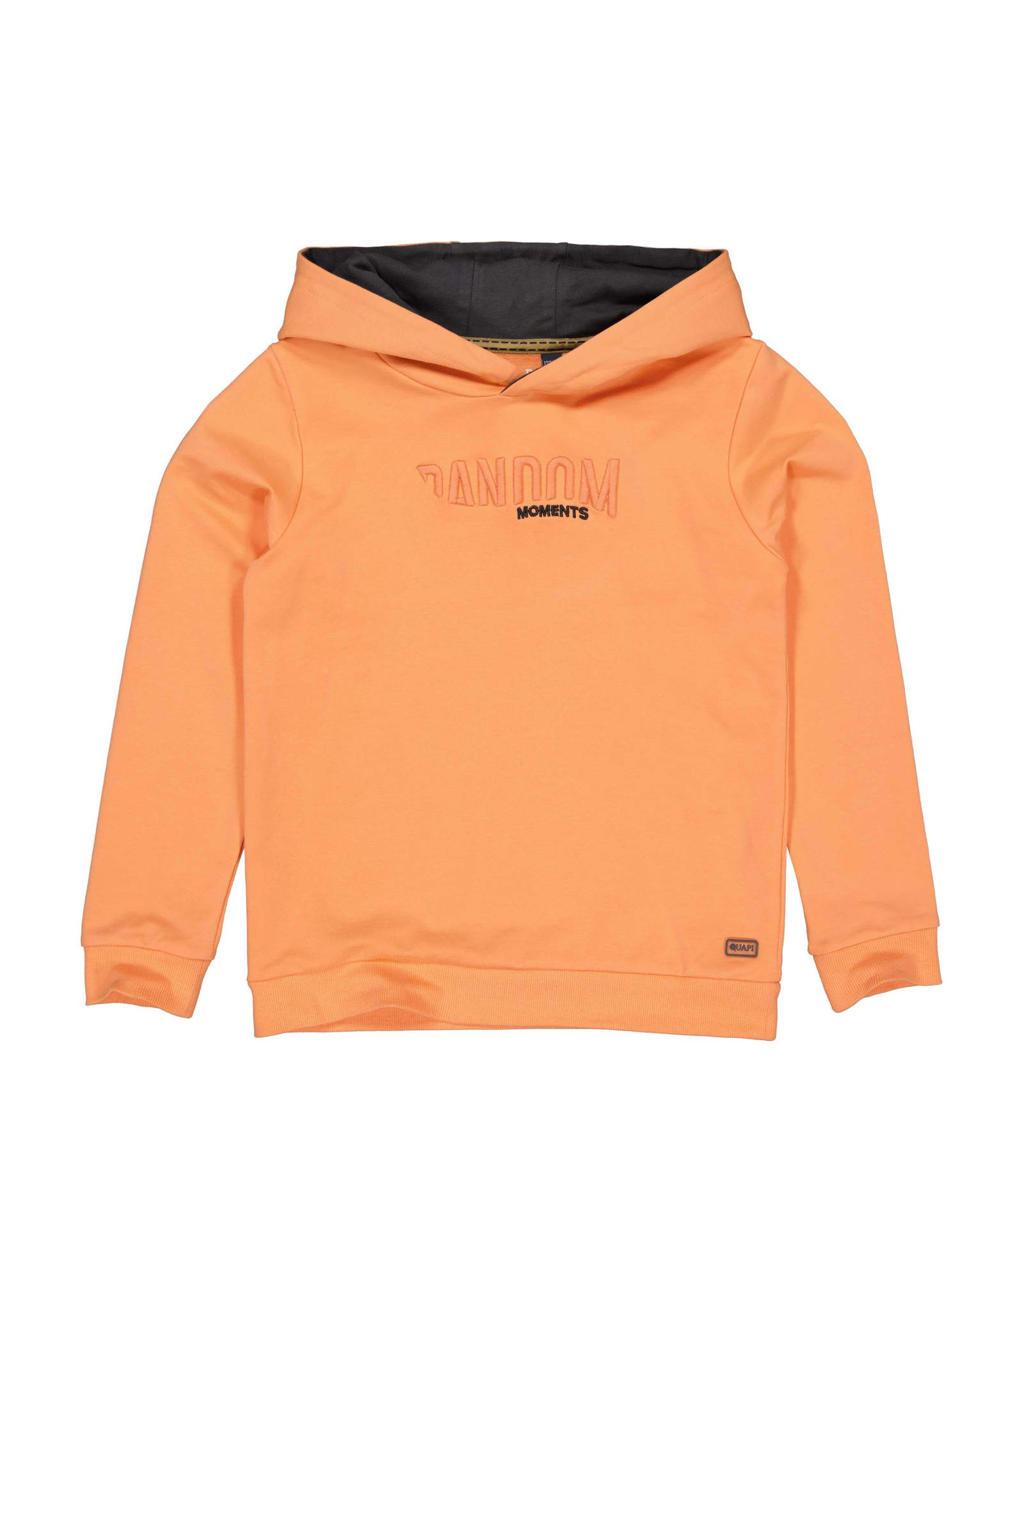 Oranje jongens Quapi hoodie van sweat materiaal met tekst print, lange mouwen en capuchon